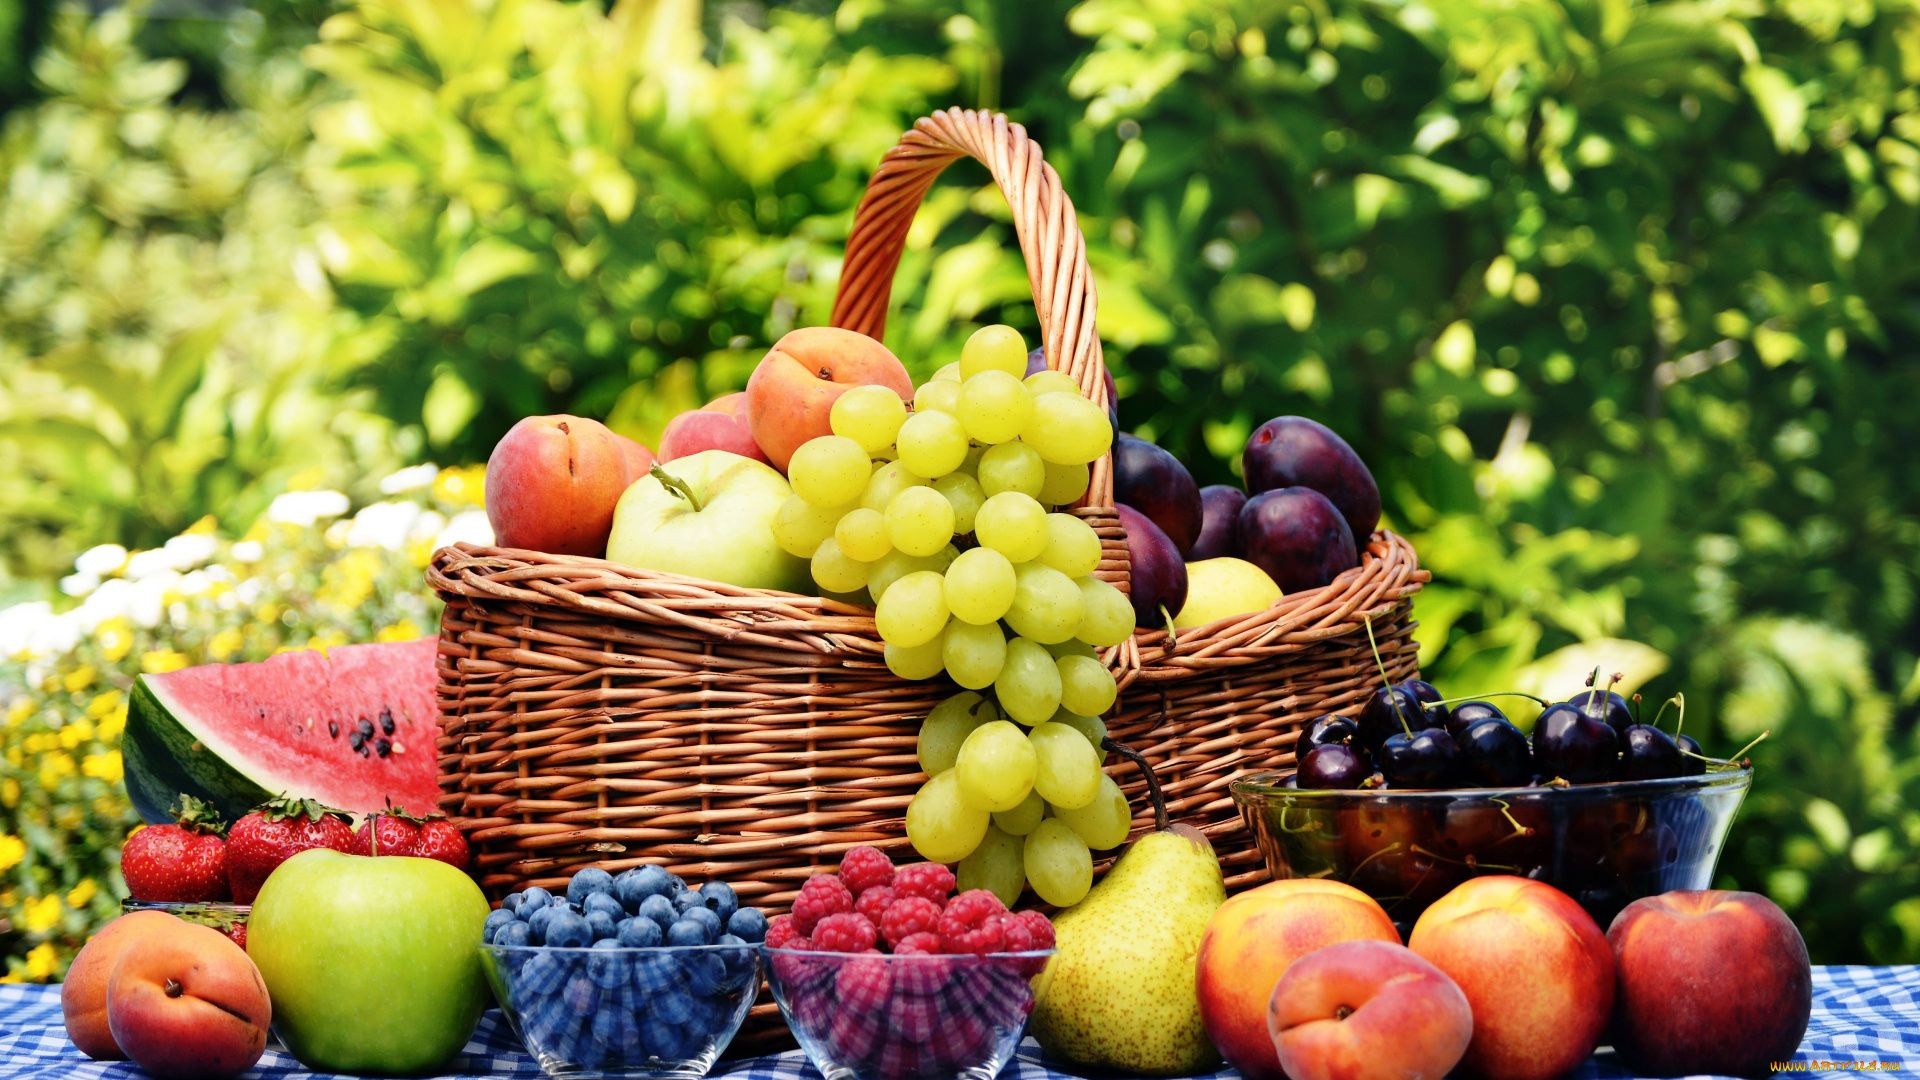 еда, фрукты, ягоды, груши, арбуз, сливы, яблоки, черника, малина, виноград, абрикосы, клубника, персики, нектарин, вишня